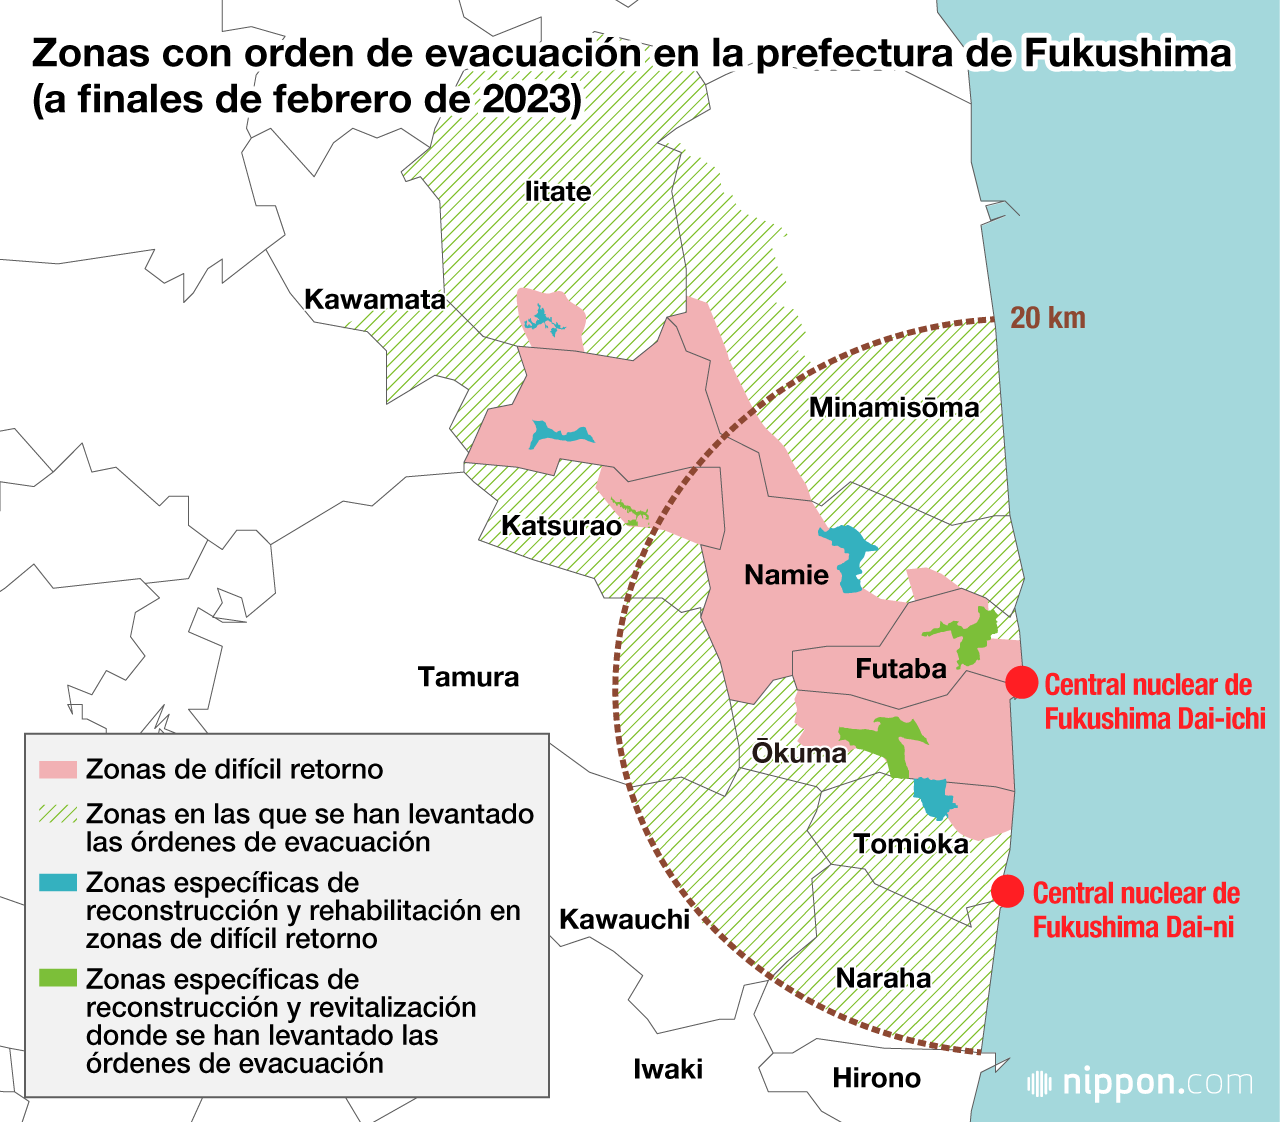 Zonas con orden de evacuación en la prefectura de Fukushima (a finales de febrero de 2023)